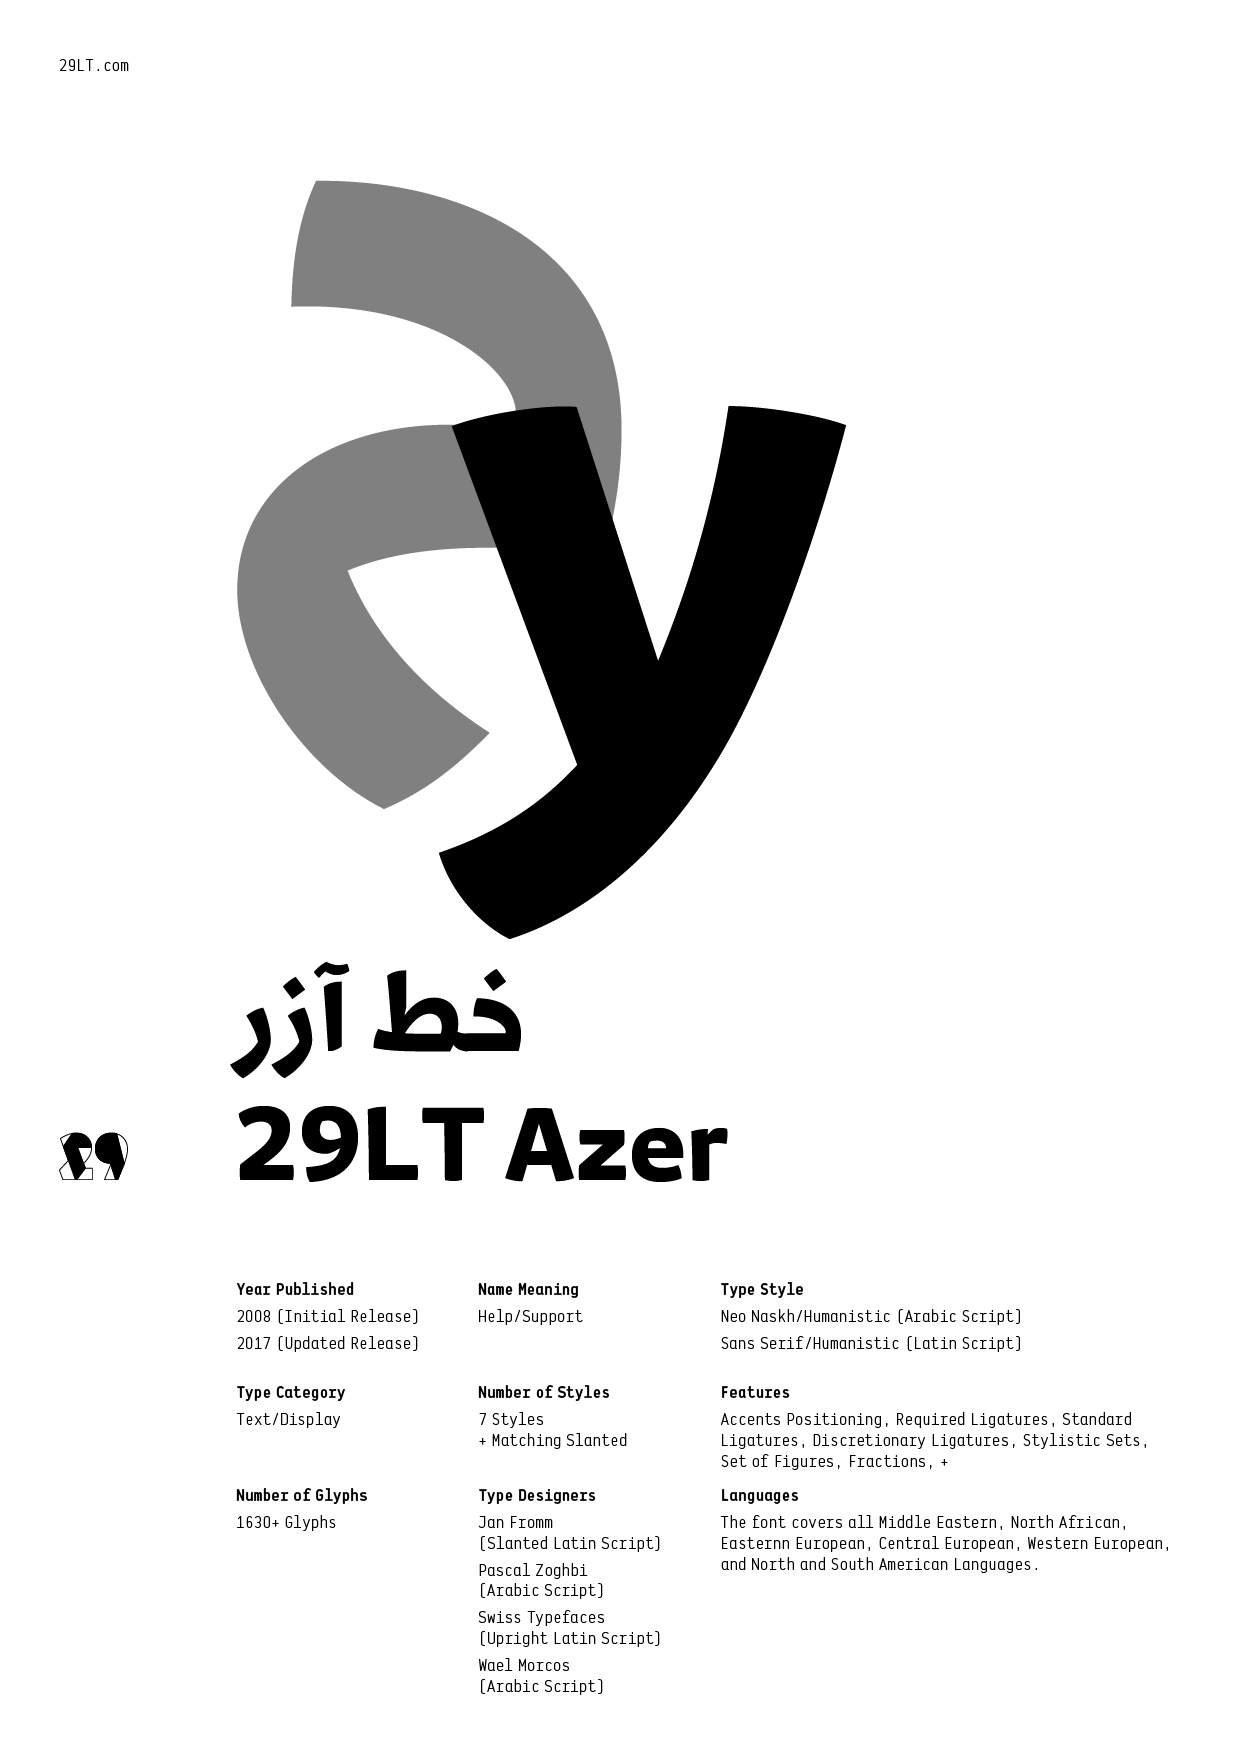 29LT Azer-PDF1